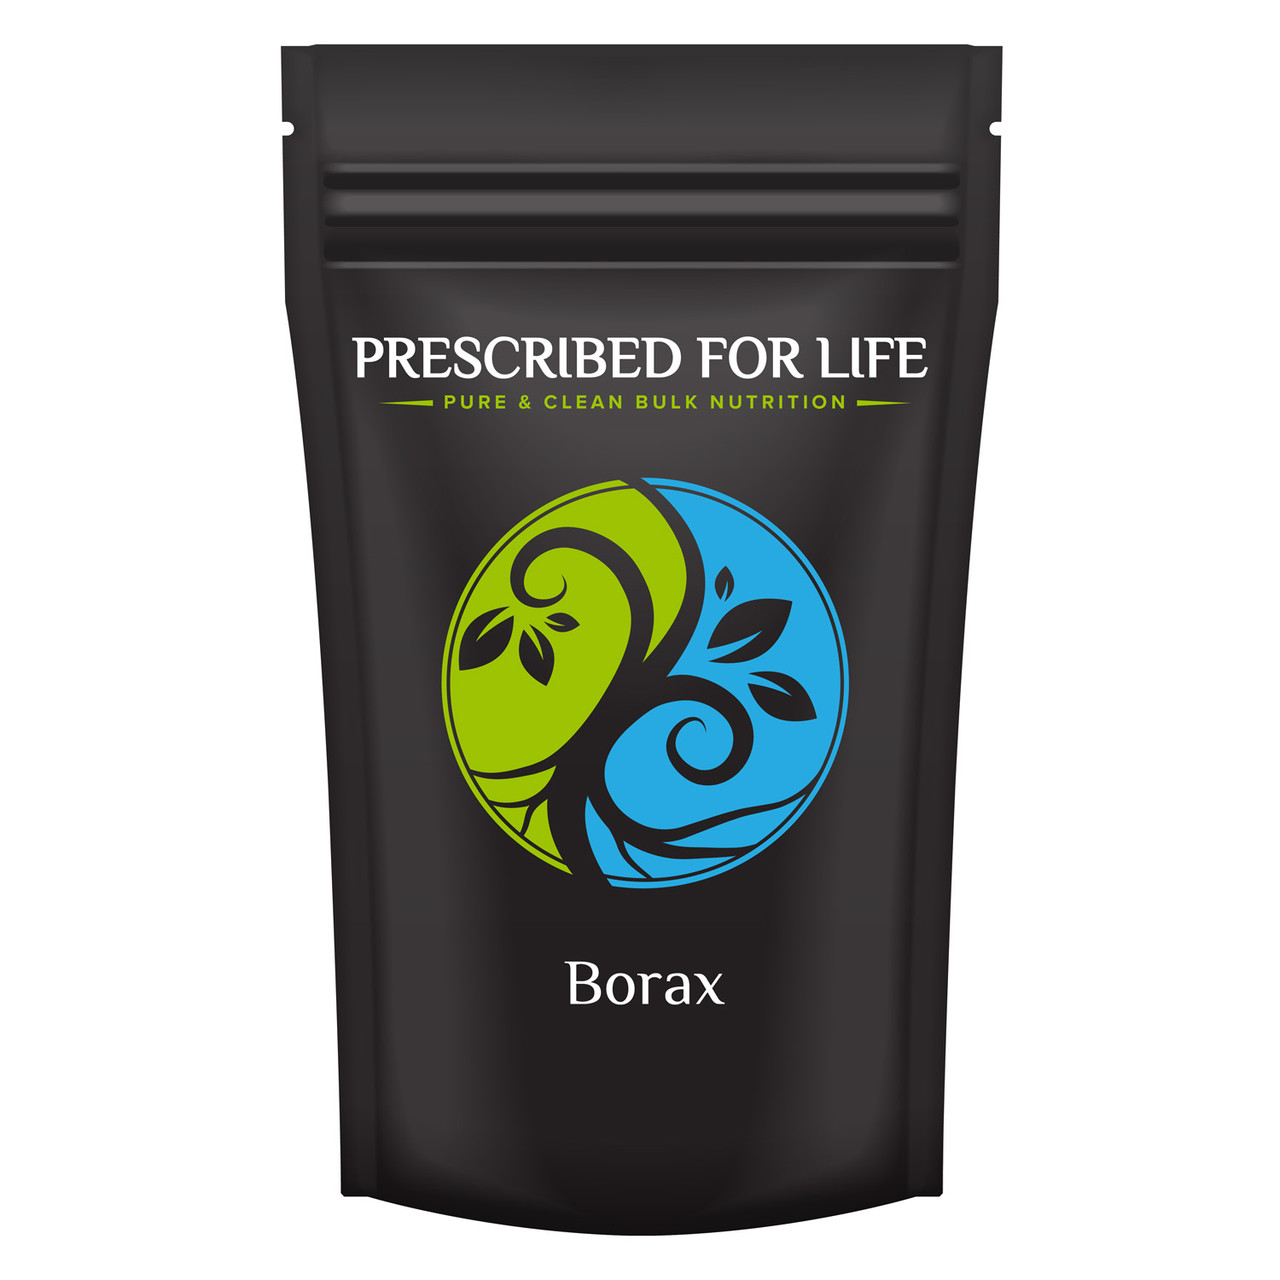 Borax en polvo 250 g – Farmacia París